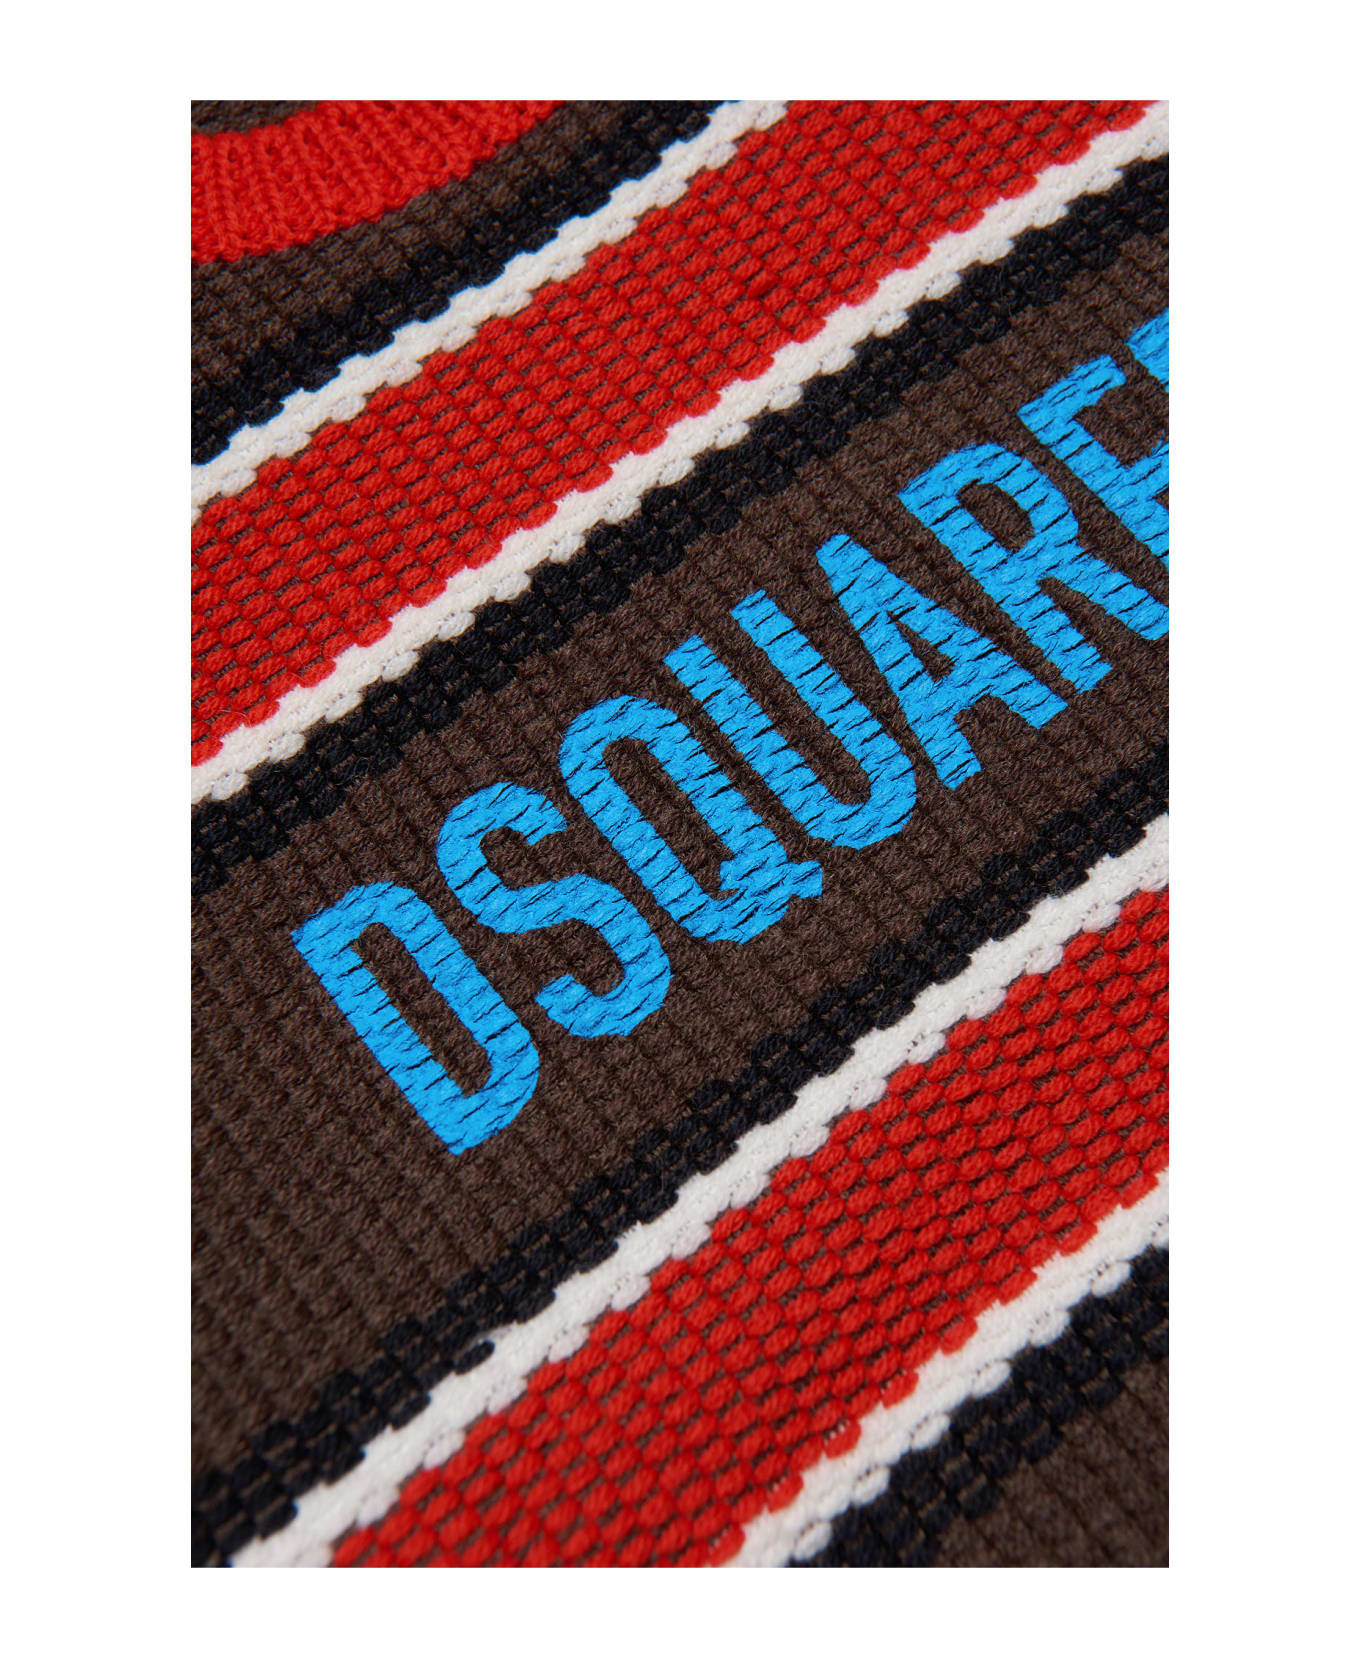 Dsquared2 Brown Sweater Unisex - Marrone ニットウェア＆スウェットシャツ